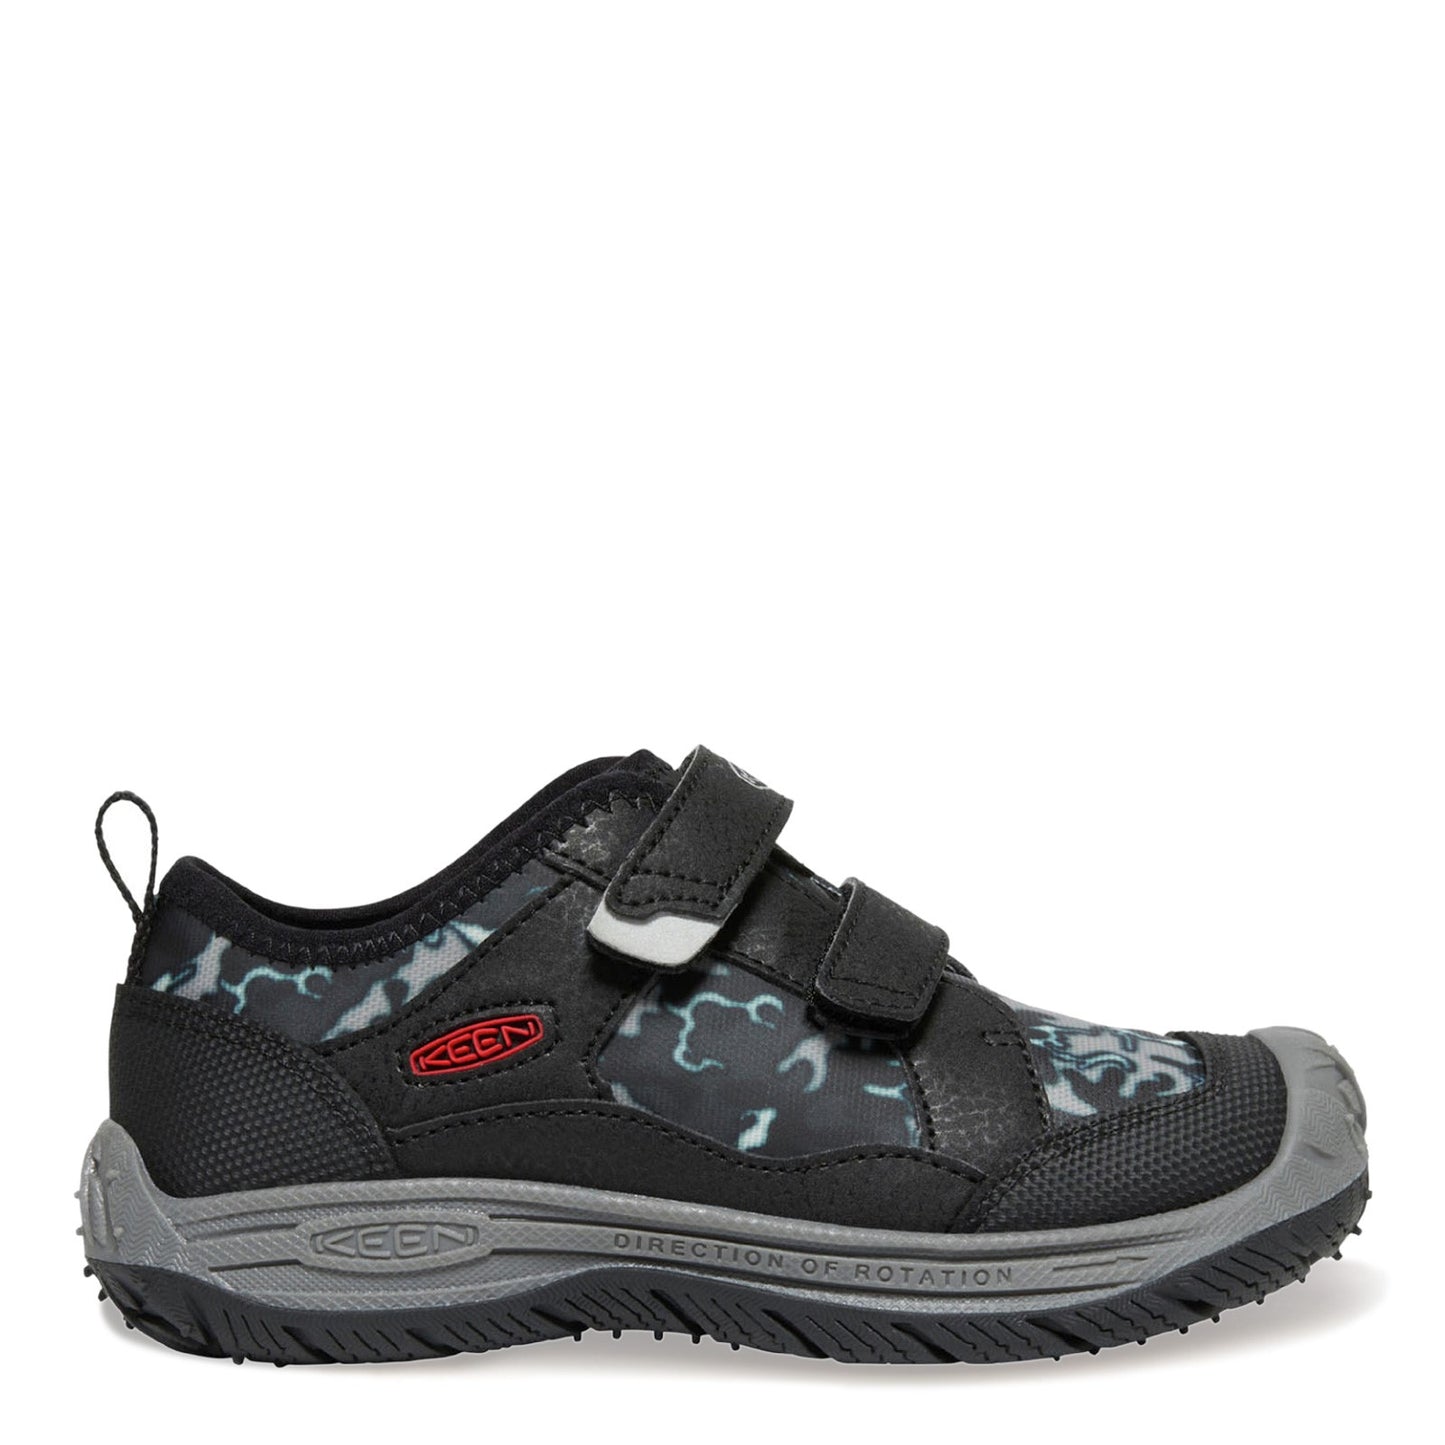 Peltz Shoes  Boy's Keen Speed Hound Sandal - Toddler & Little Kid Black/Camo 1026213